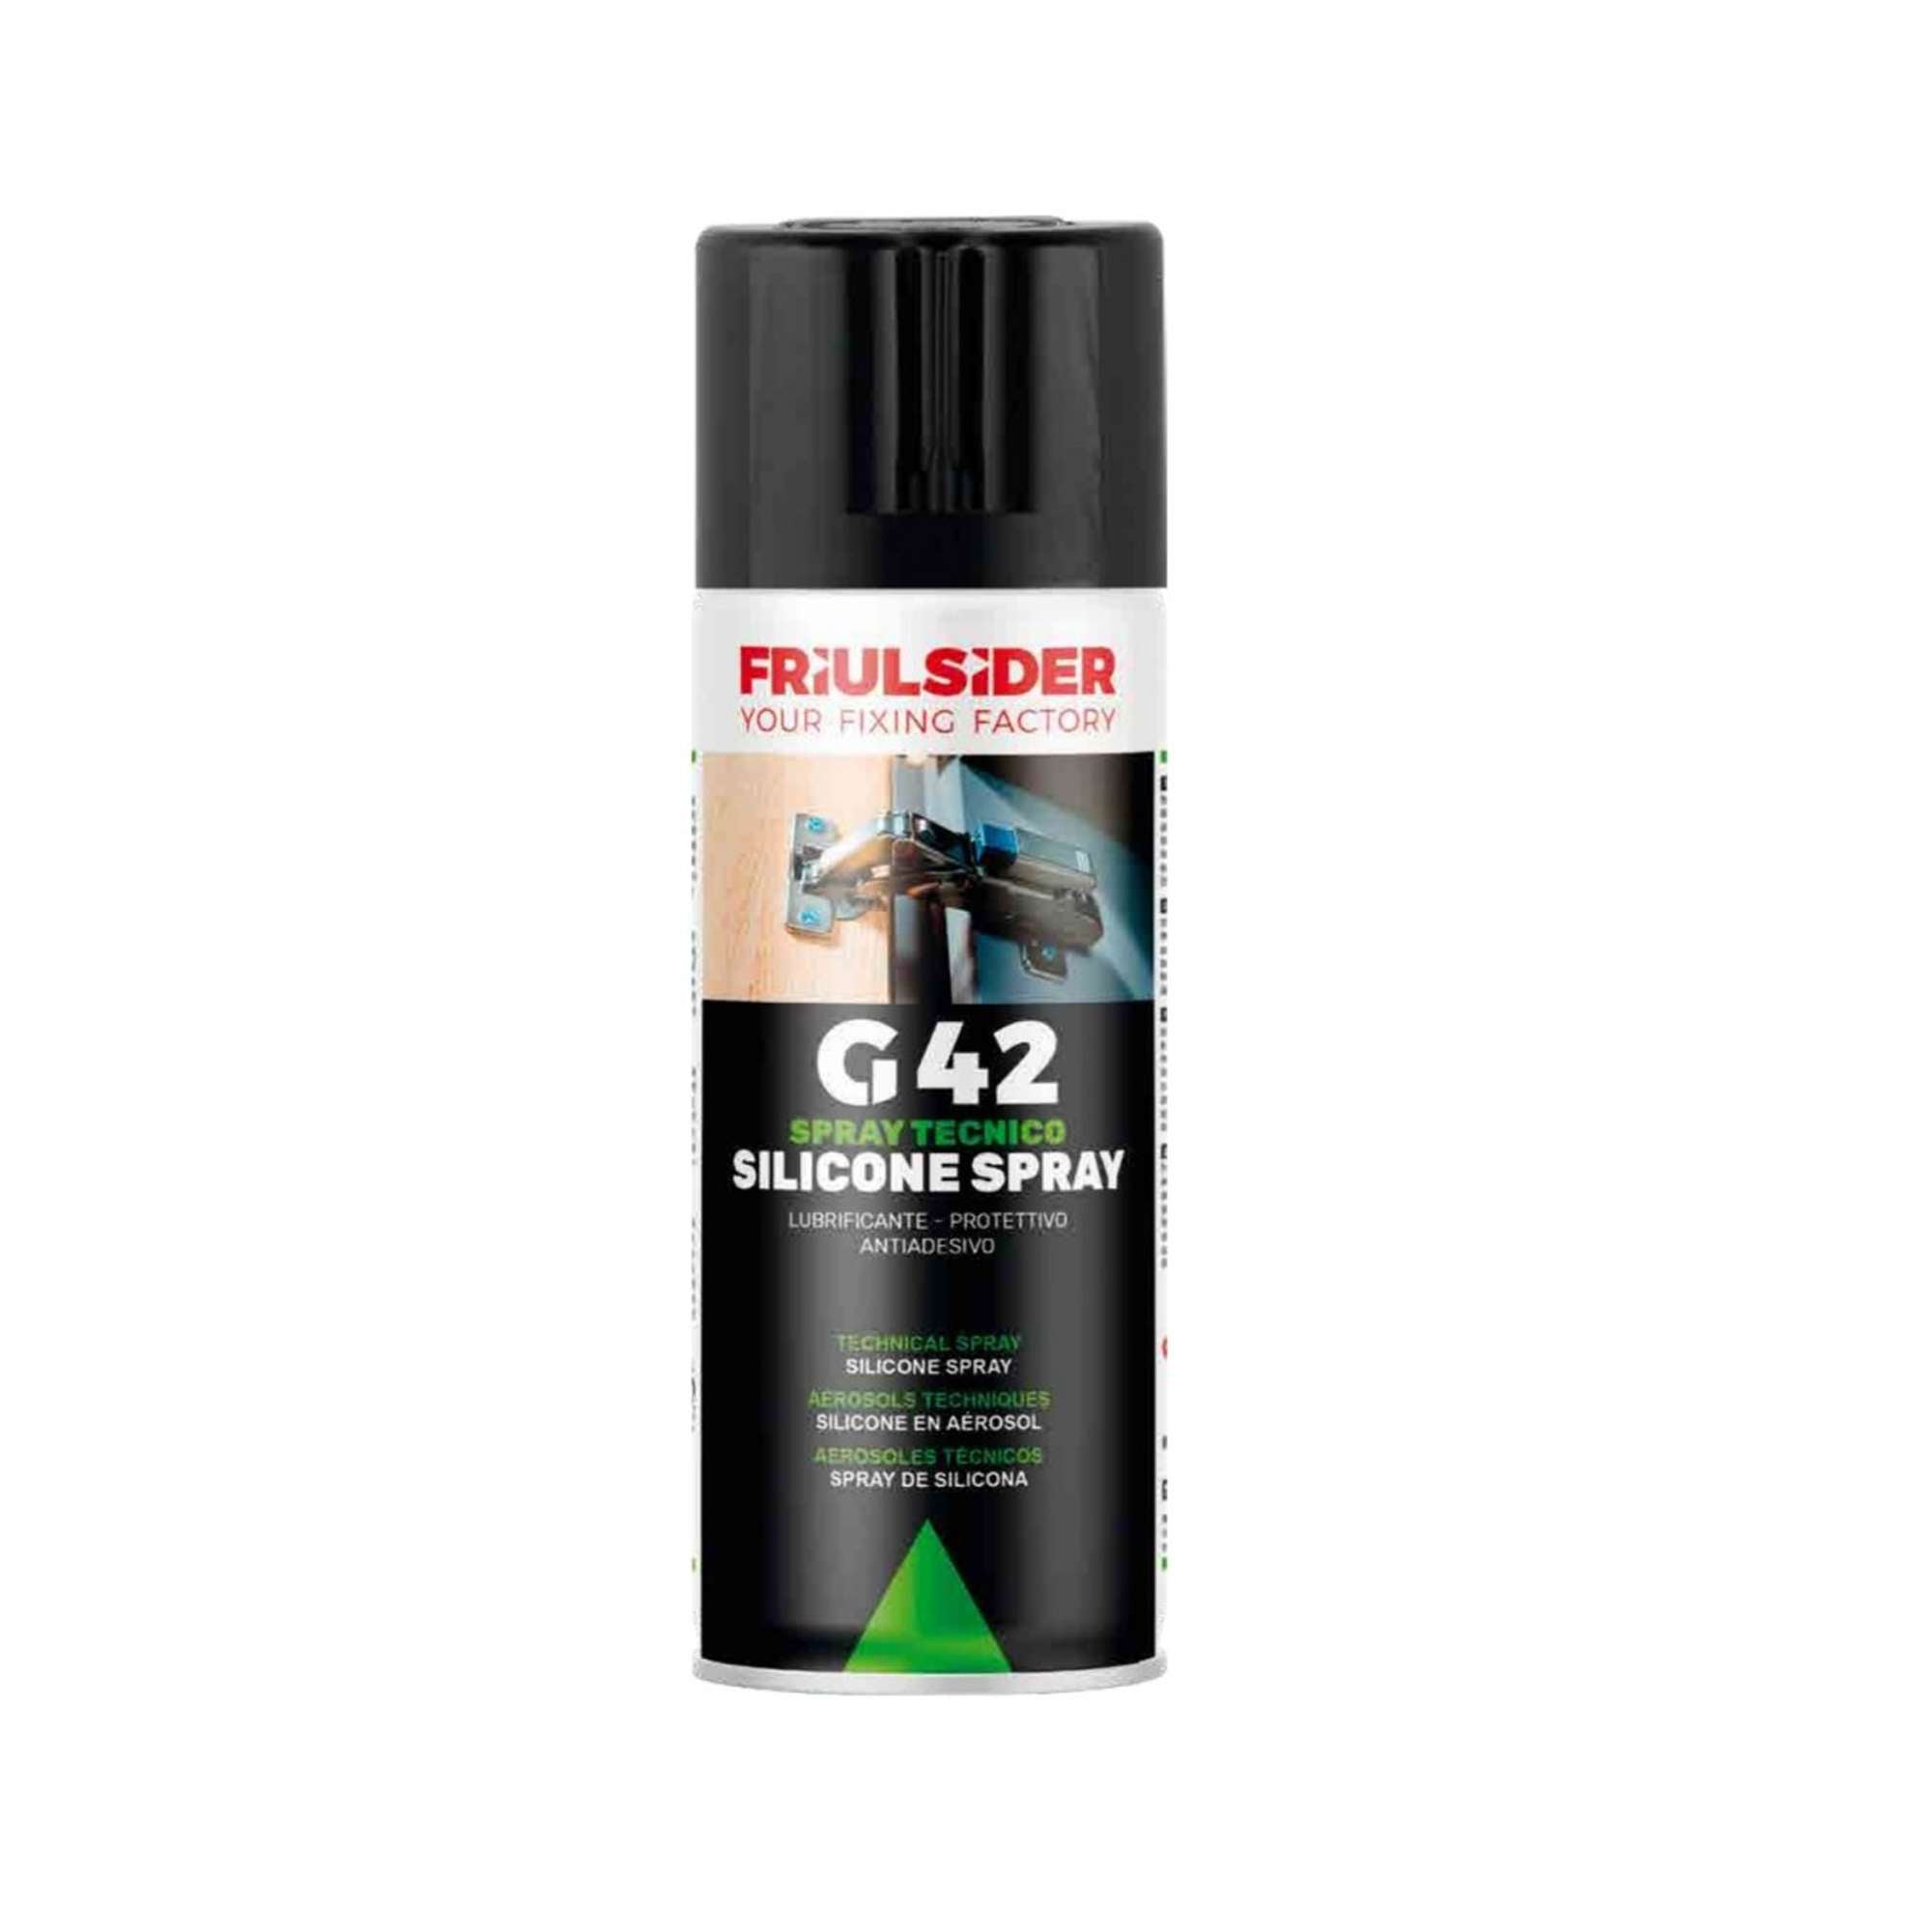 Spray tecnico silicone lubrificante antiadesivo 020 400ml conf. 12pz - G42 Friulsider